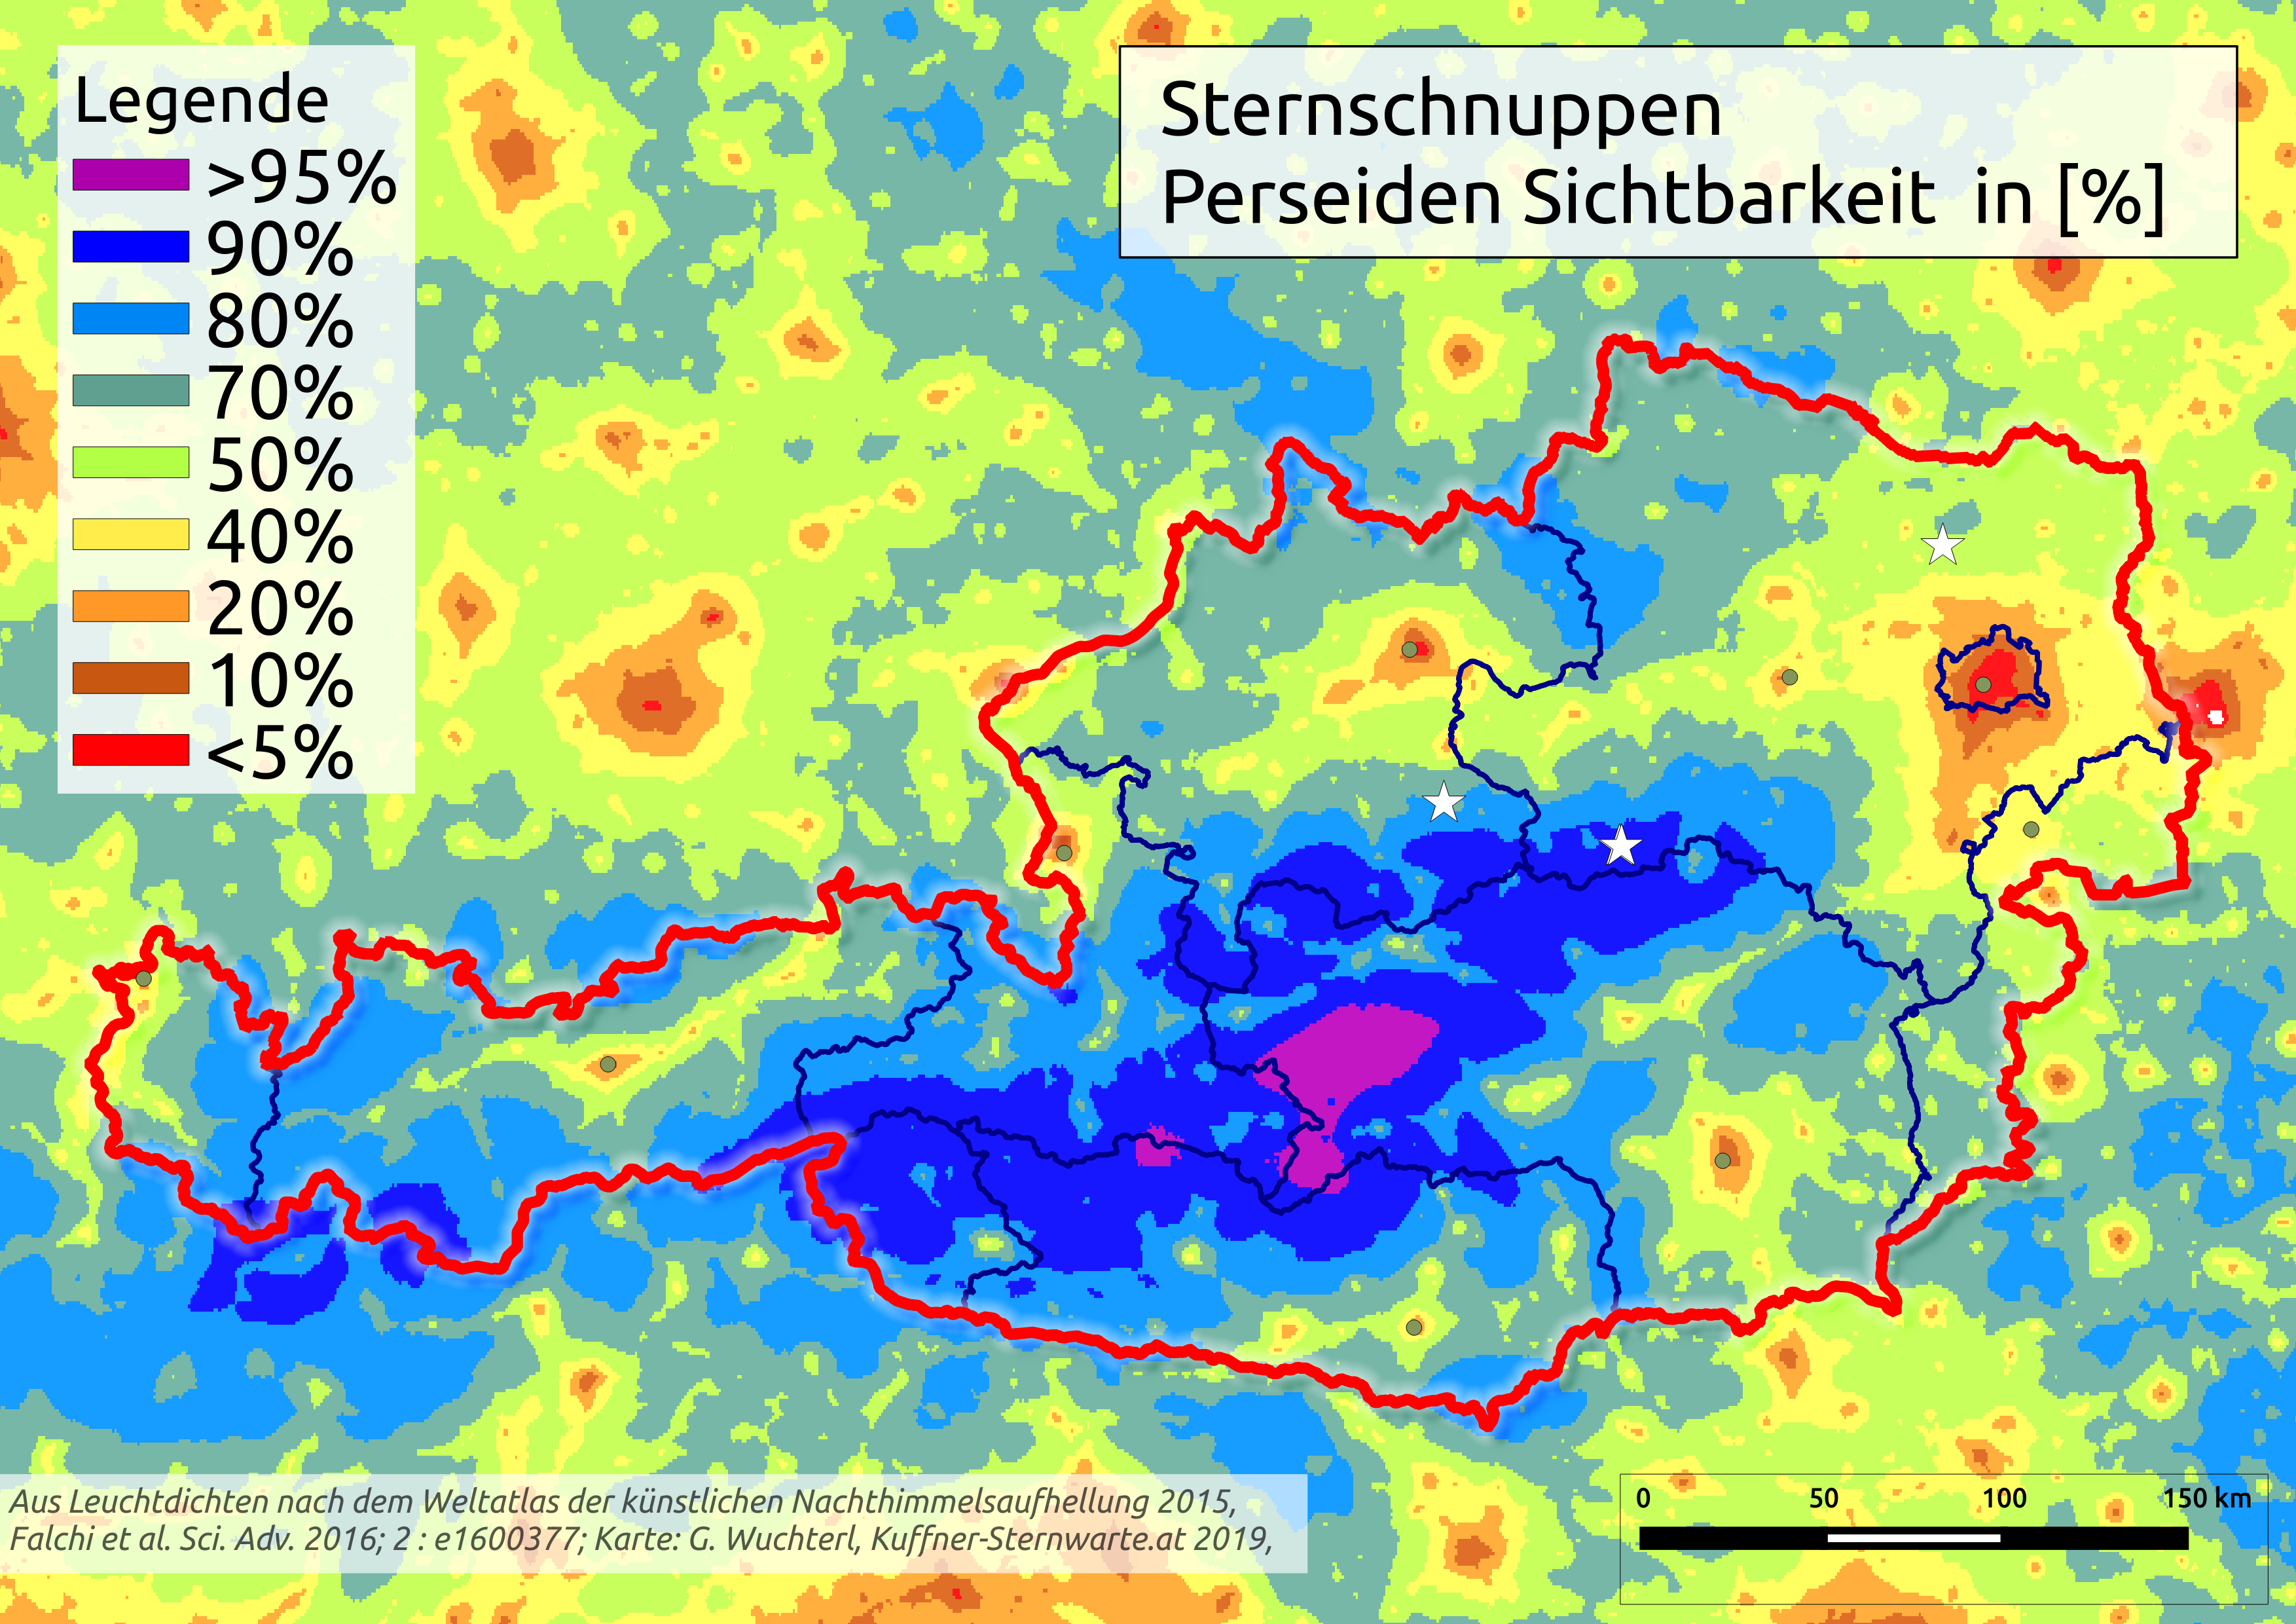  Ö Karte Sternschnuppensichtbarkeit. © Günther Wuchterl, Verein Kuffner-Sternwarte und Lebensraum Naturnacht